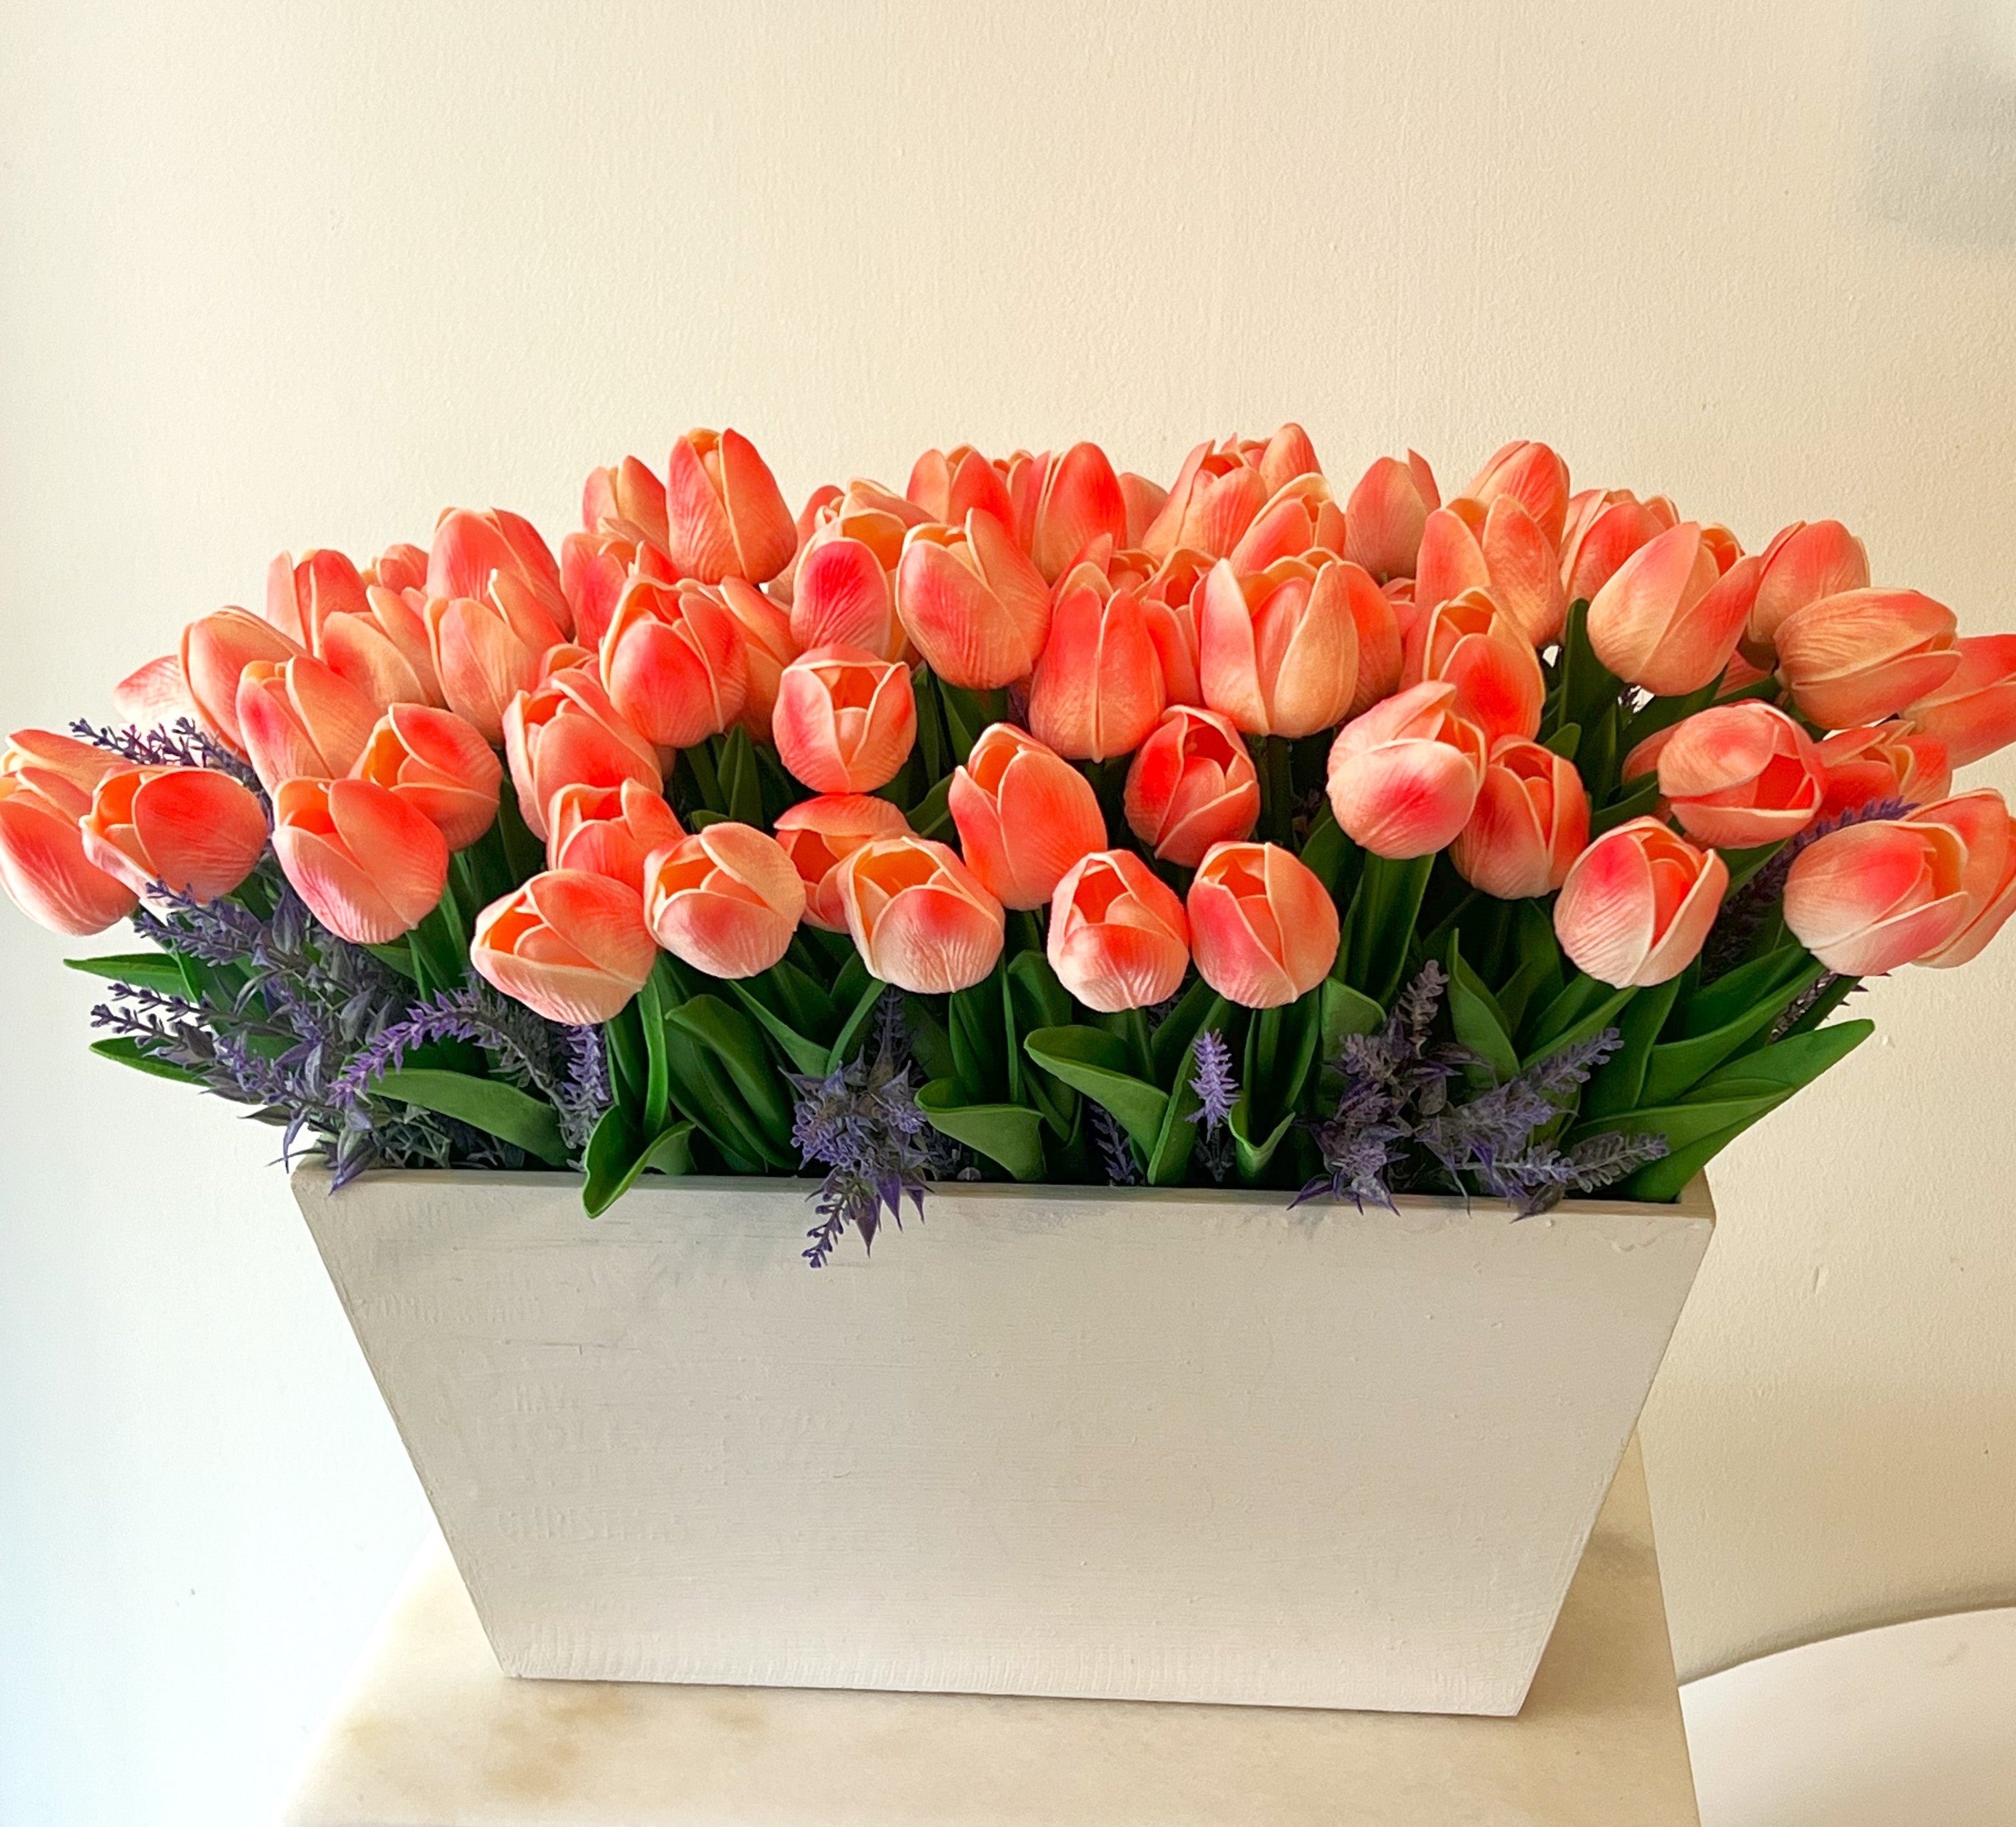 Tulips Centerpiece, 22"L X 14" W